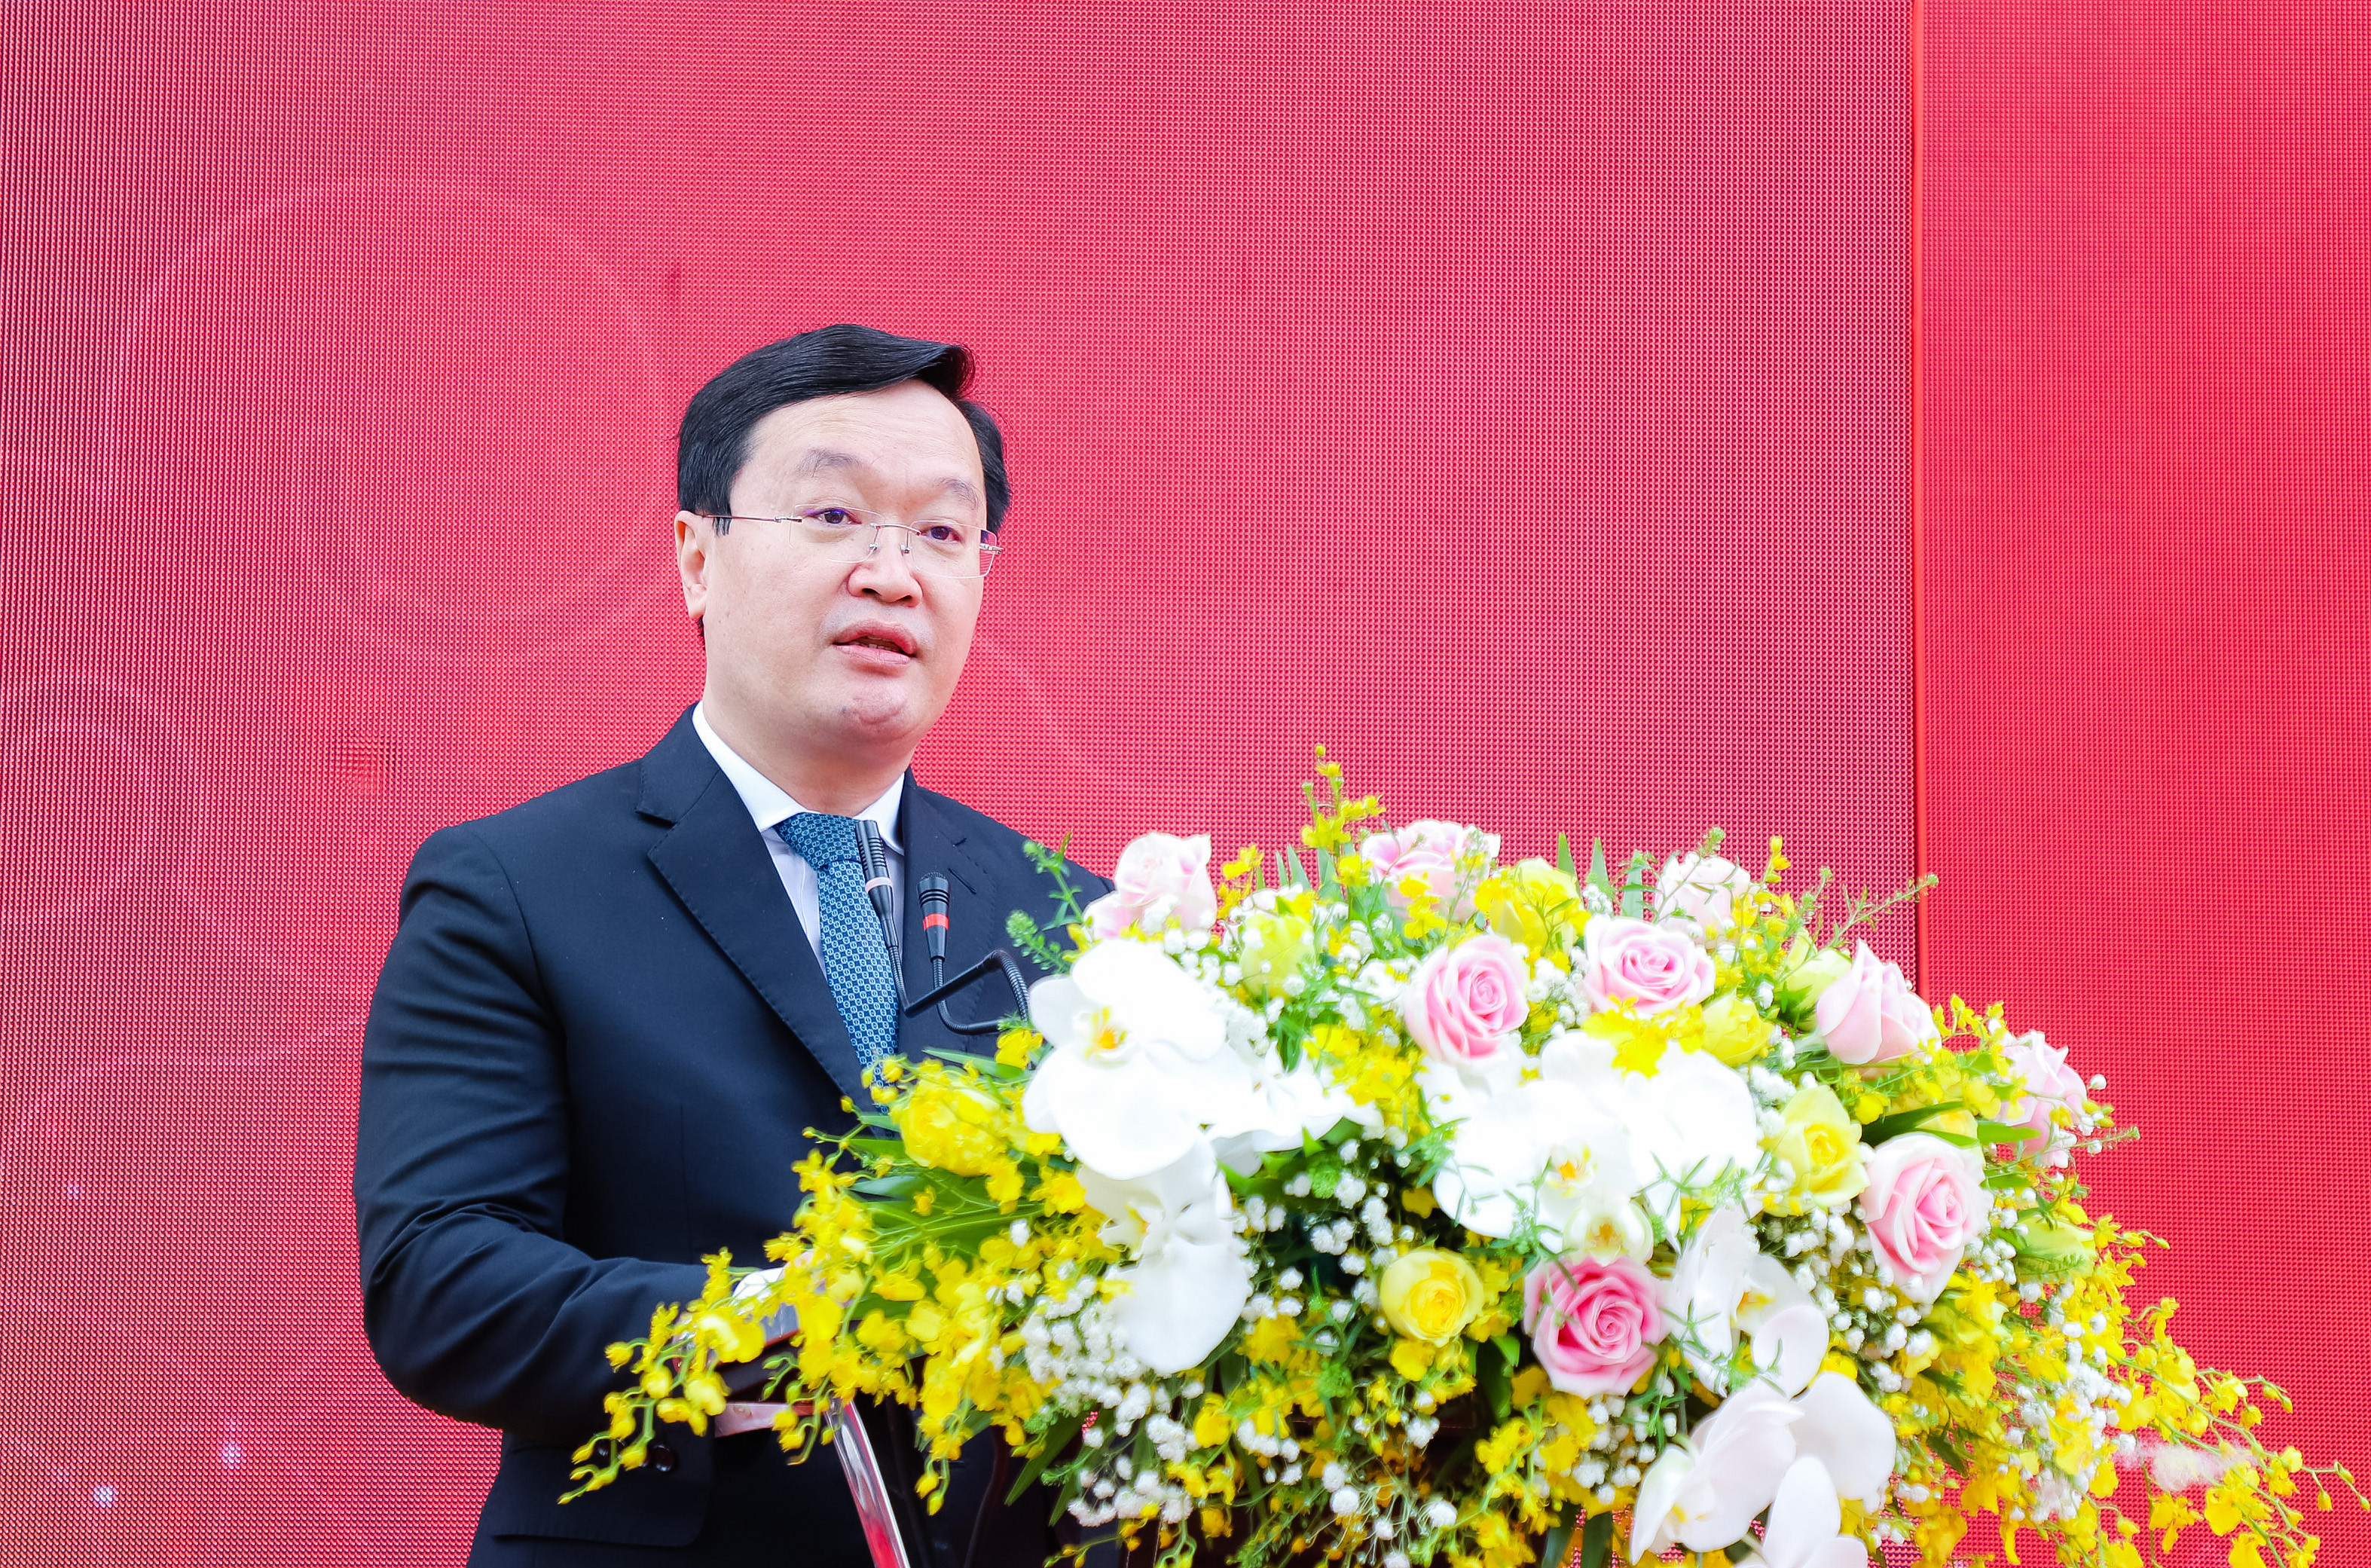 Đồng chí Nguyễn Đức Trung - Chủ tịch UBND tỉnh phát biểu tại buổi lễ. Ảnh: Phạm Bằng